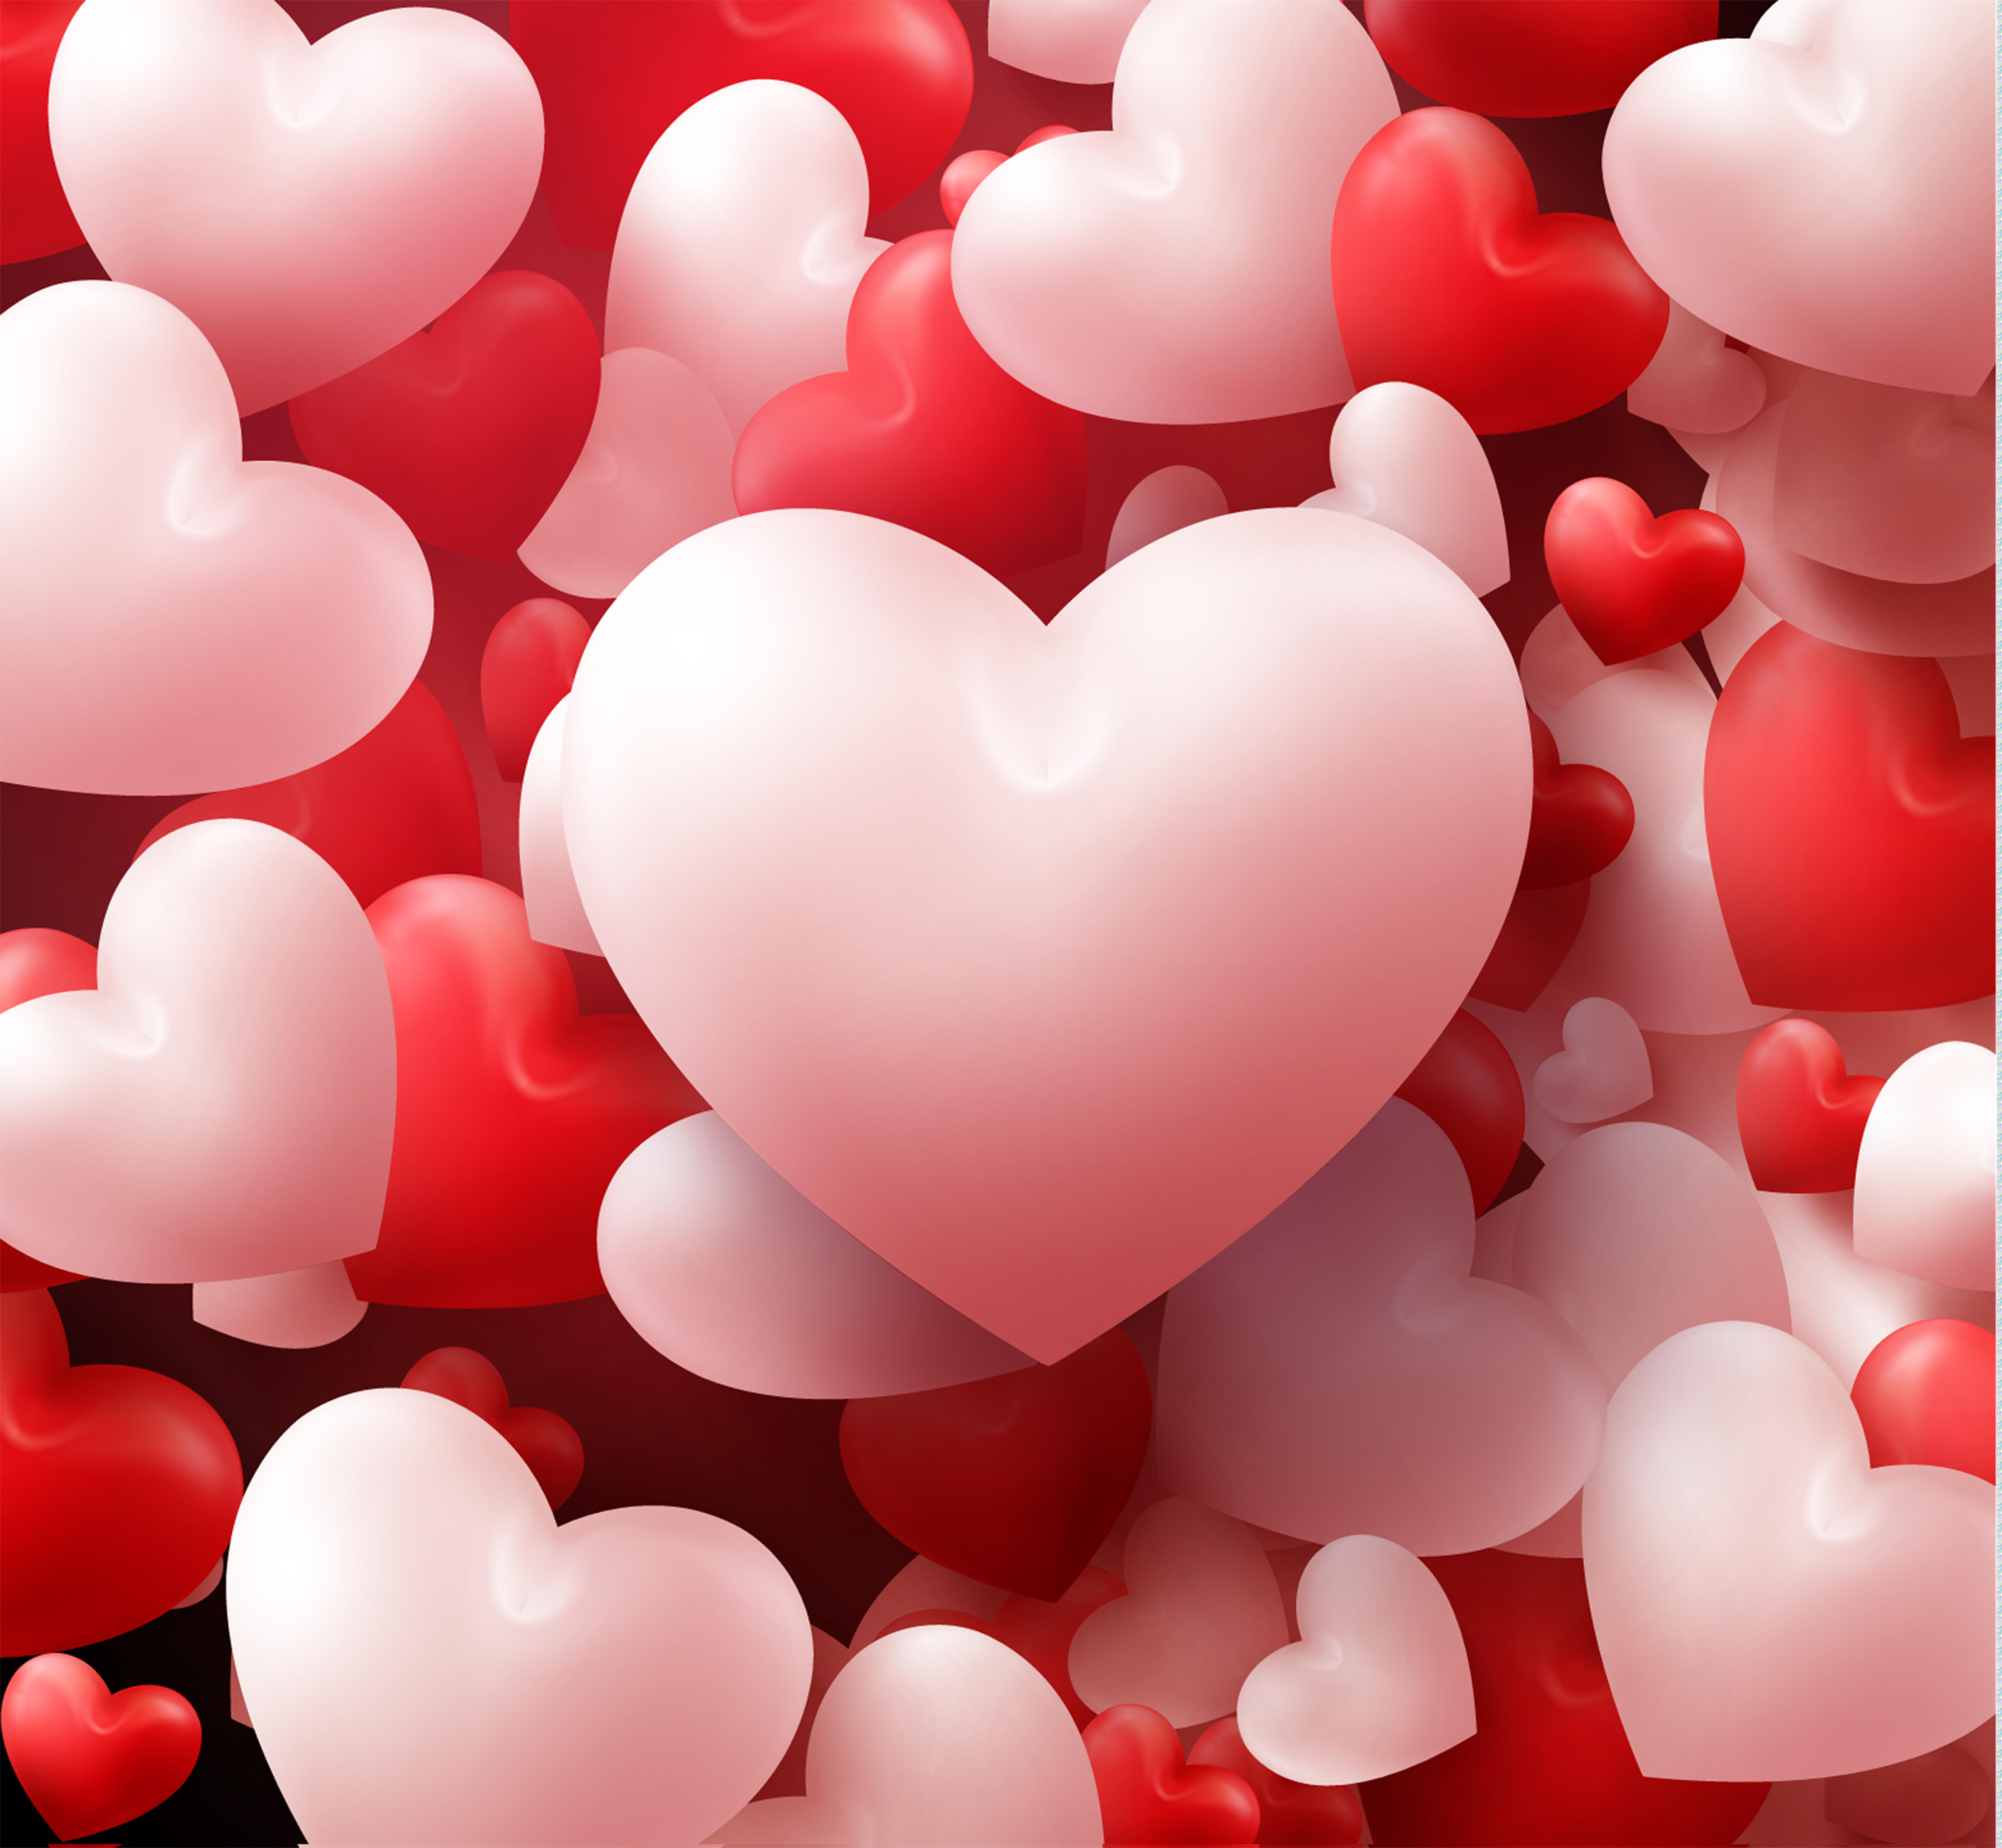 Валентинка - это не сердечко: что на самом деле означает знак Дня всех влюбленных